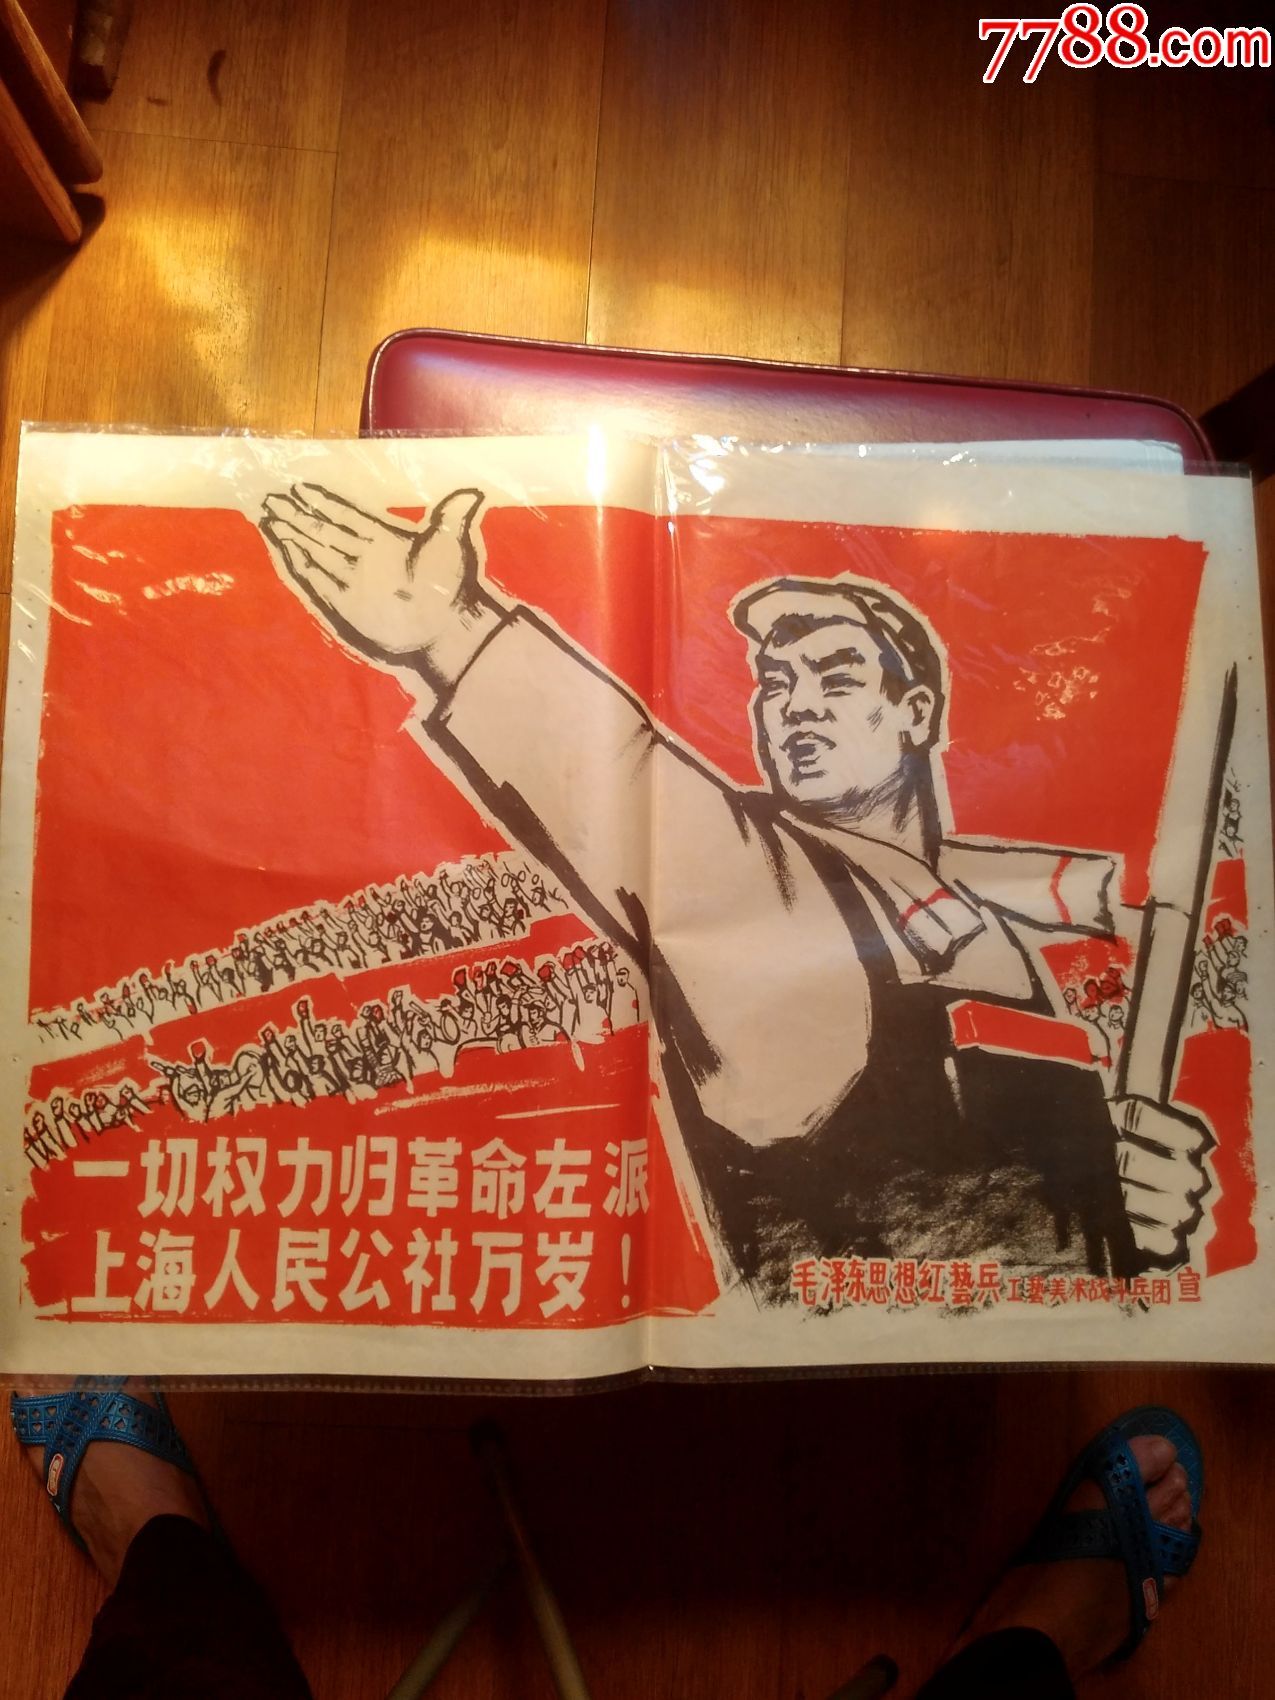 文革宣传画《一切权力归革命左派上海人民公社万岁!》